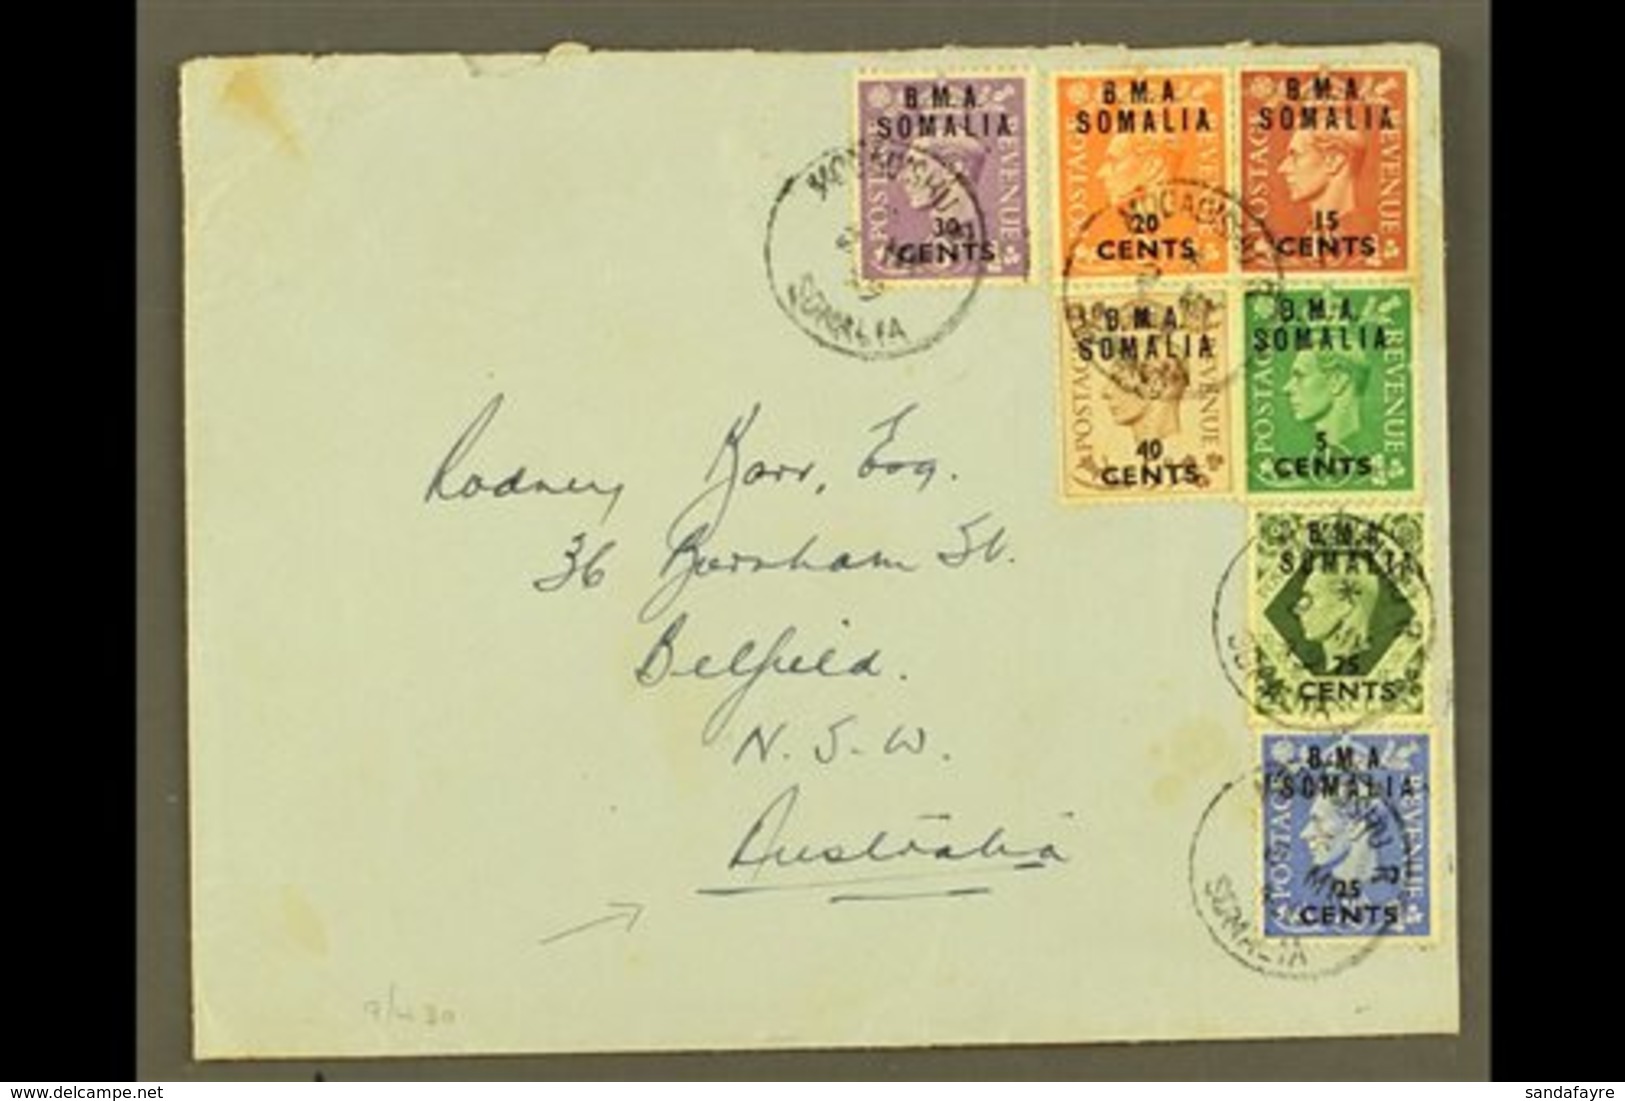 SOMALIA 1949 Plain Envelope To Australia, Franked KGVI 5c On ½d To 40c On 5d & 75c On 9d "B.M.A. SOMALIA" Ovpts, SG S10/ - Italienisch Ost-Afrika